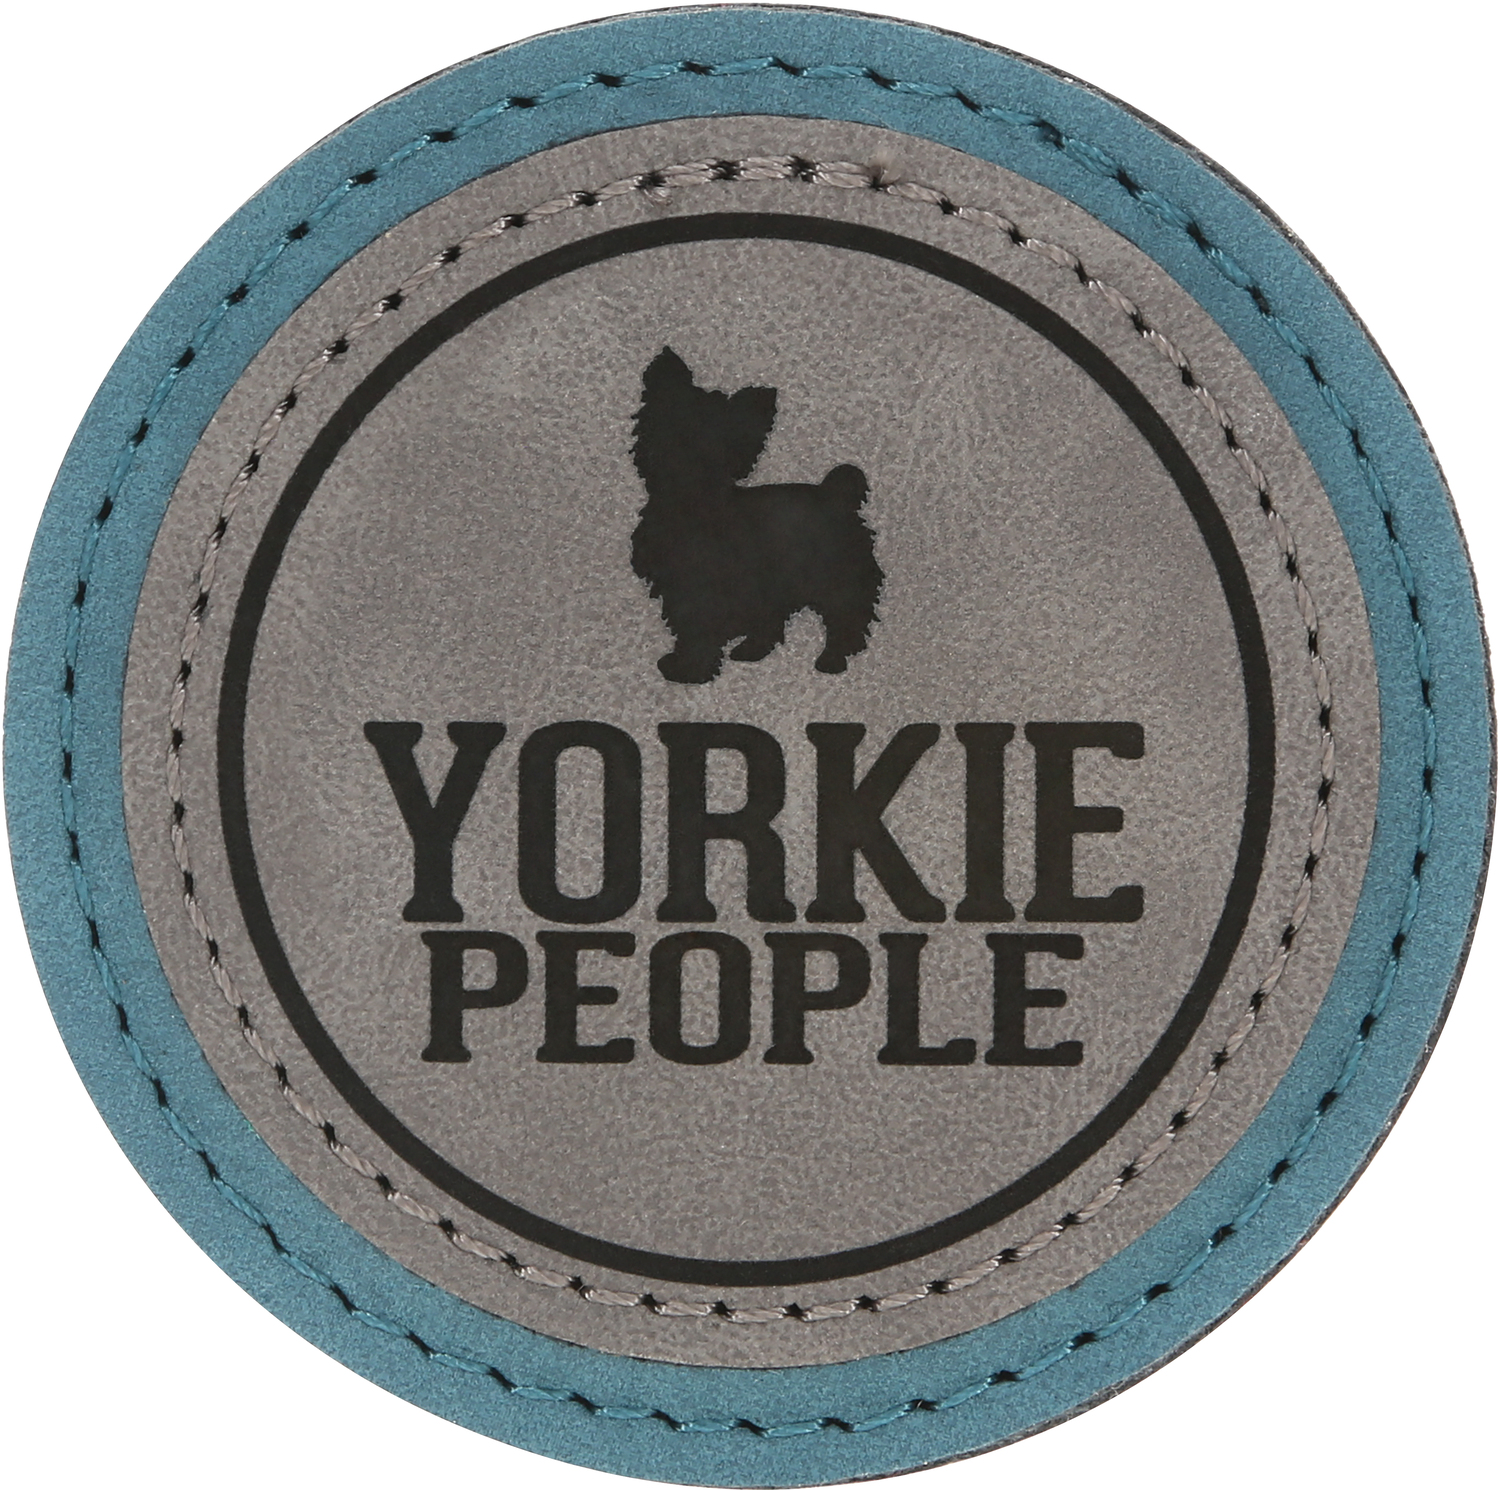 Yorkie People by We Pets - Yorkie People - 2.5" Magnet